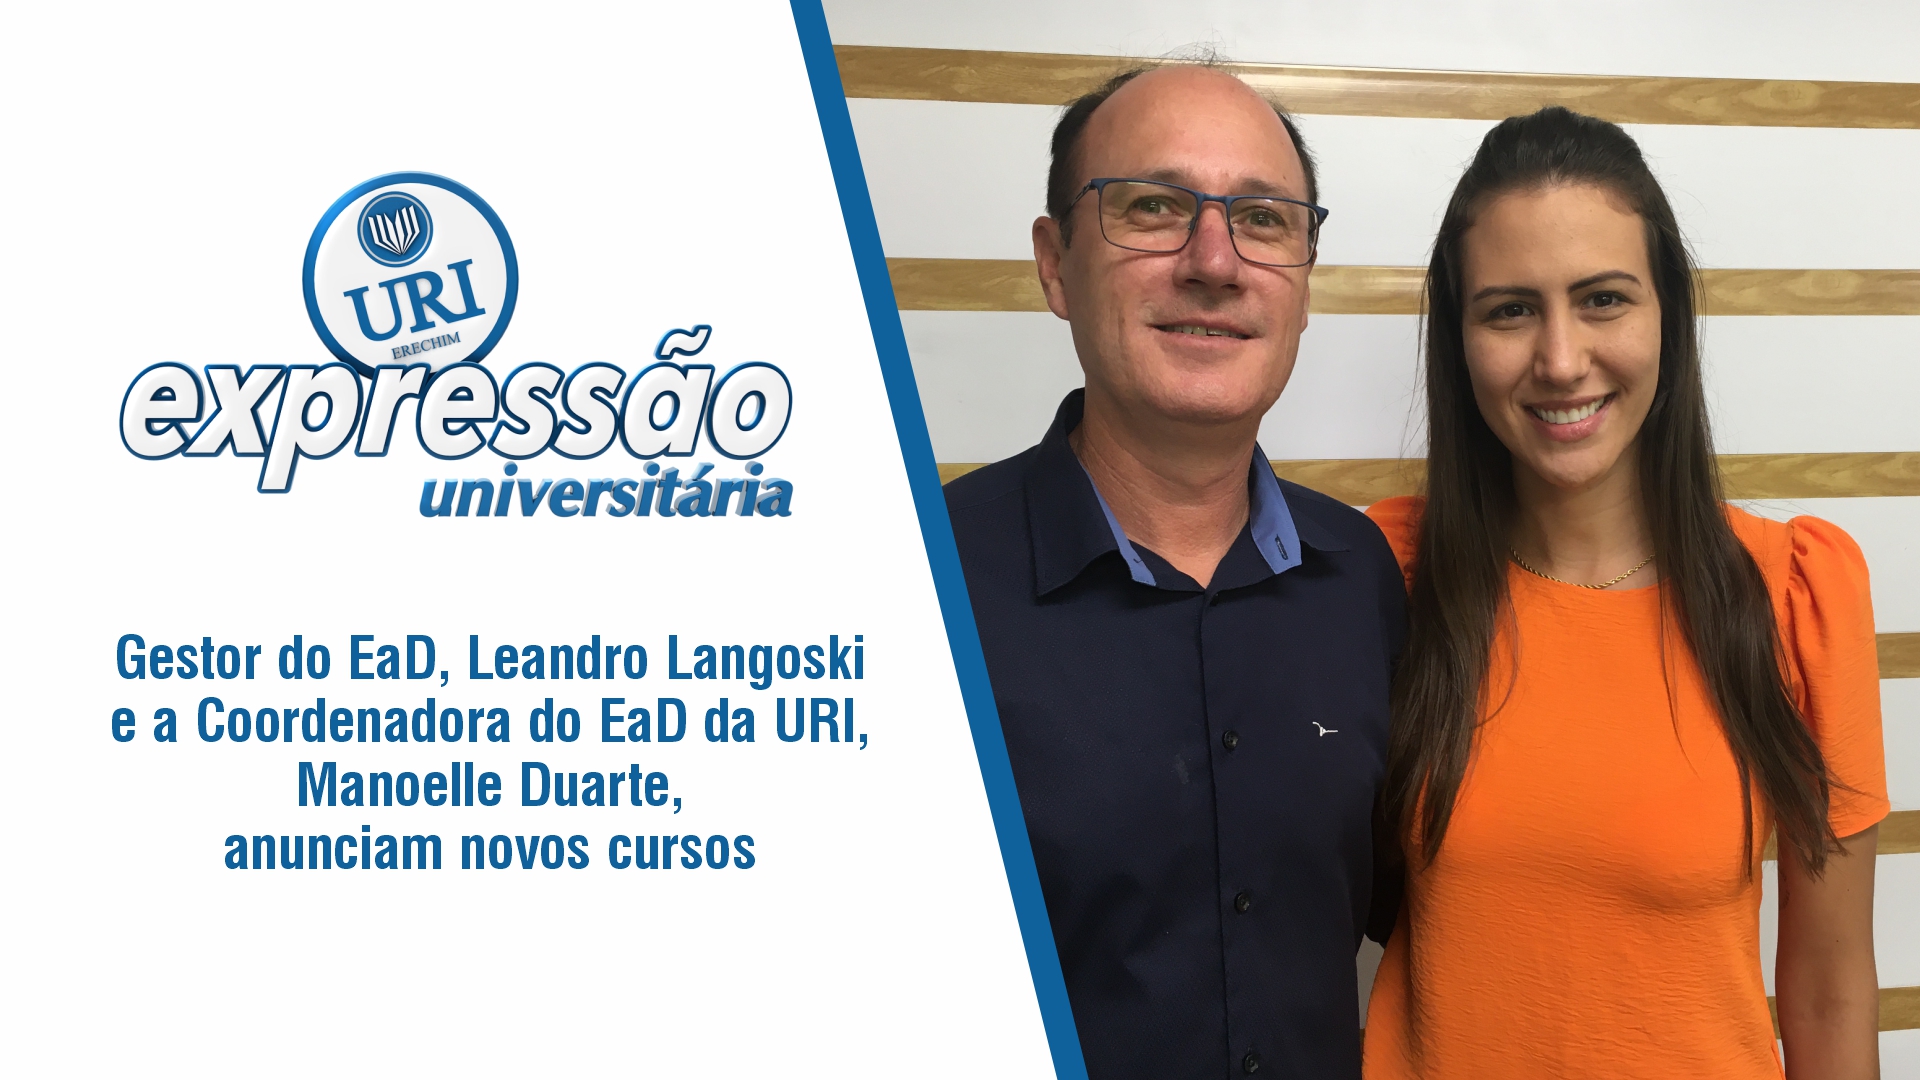 Gestor do EaD, Leandro Langoski e a Coordenadora do EaD da URI, Manoelle Duarte anunciam novos cursos